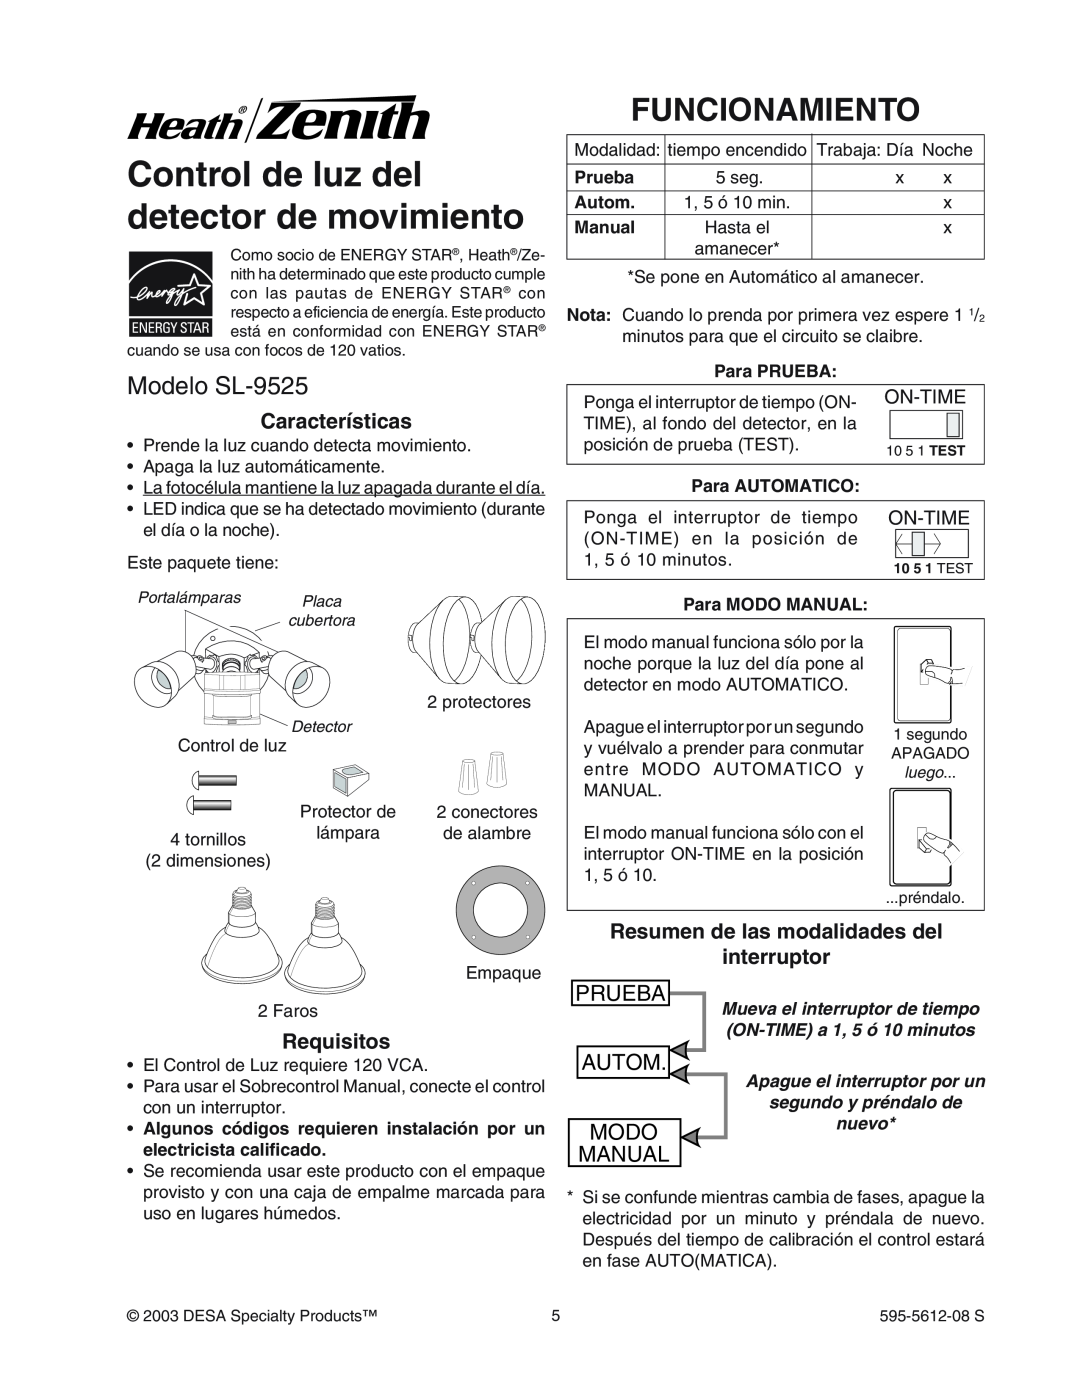 Heath Zenith Control de luz del detector de movimiento, Funcionamiento, Modelo SL-9525, Caracter’sticas, Requisitos 